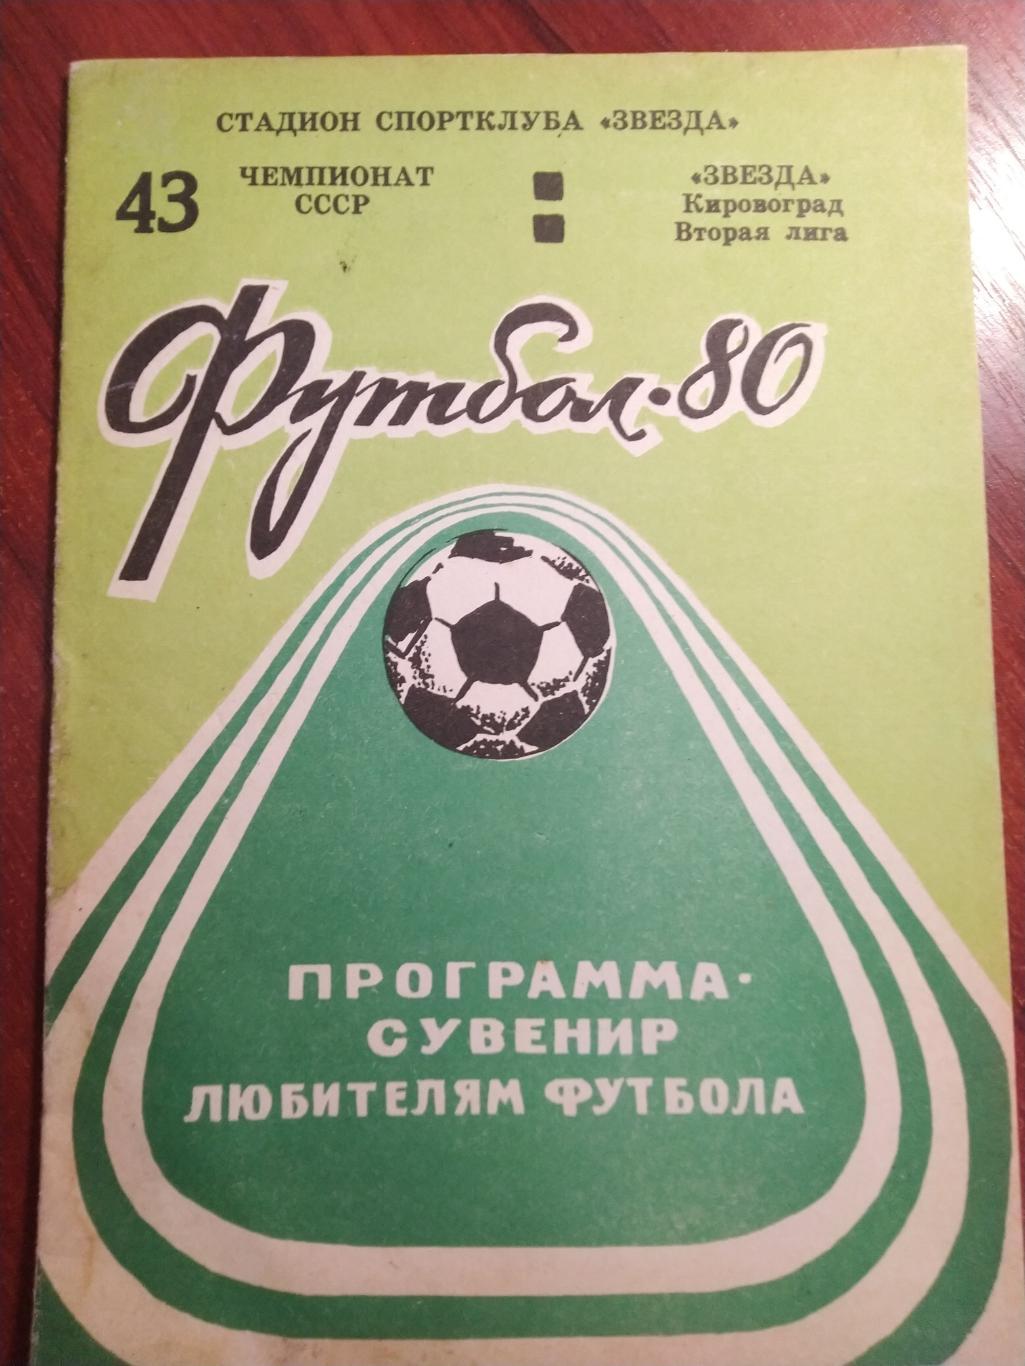 Футбольная программа-сувенир 43 первенство СССР -Звезда Кировоград 1980